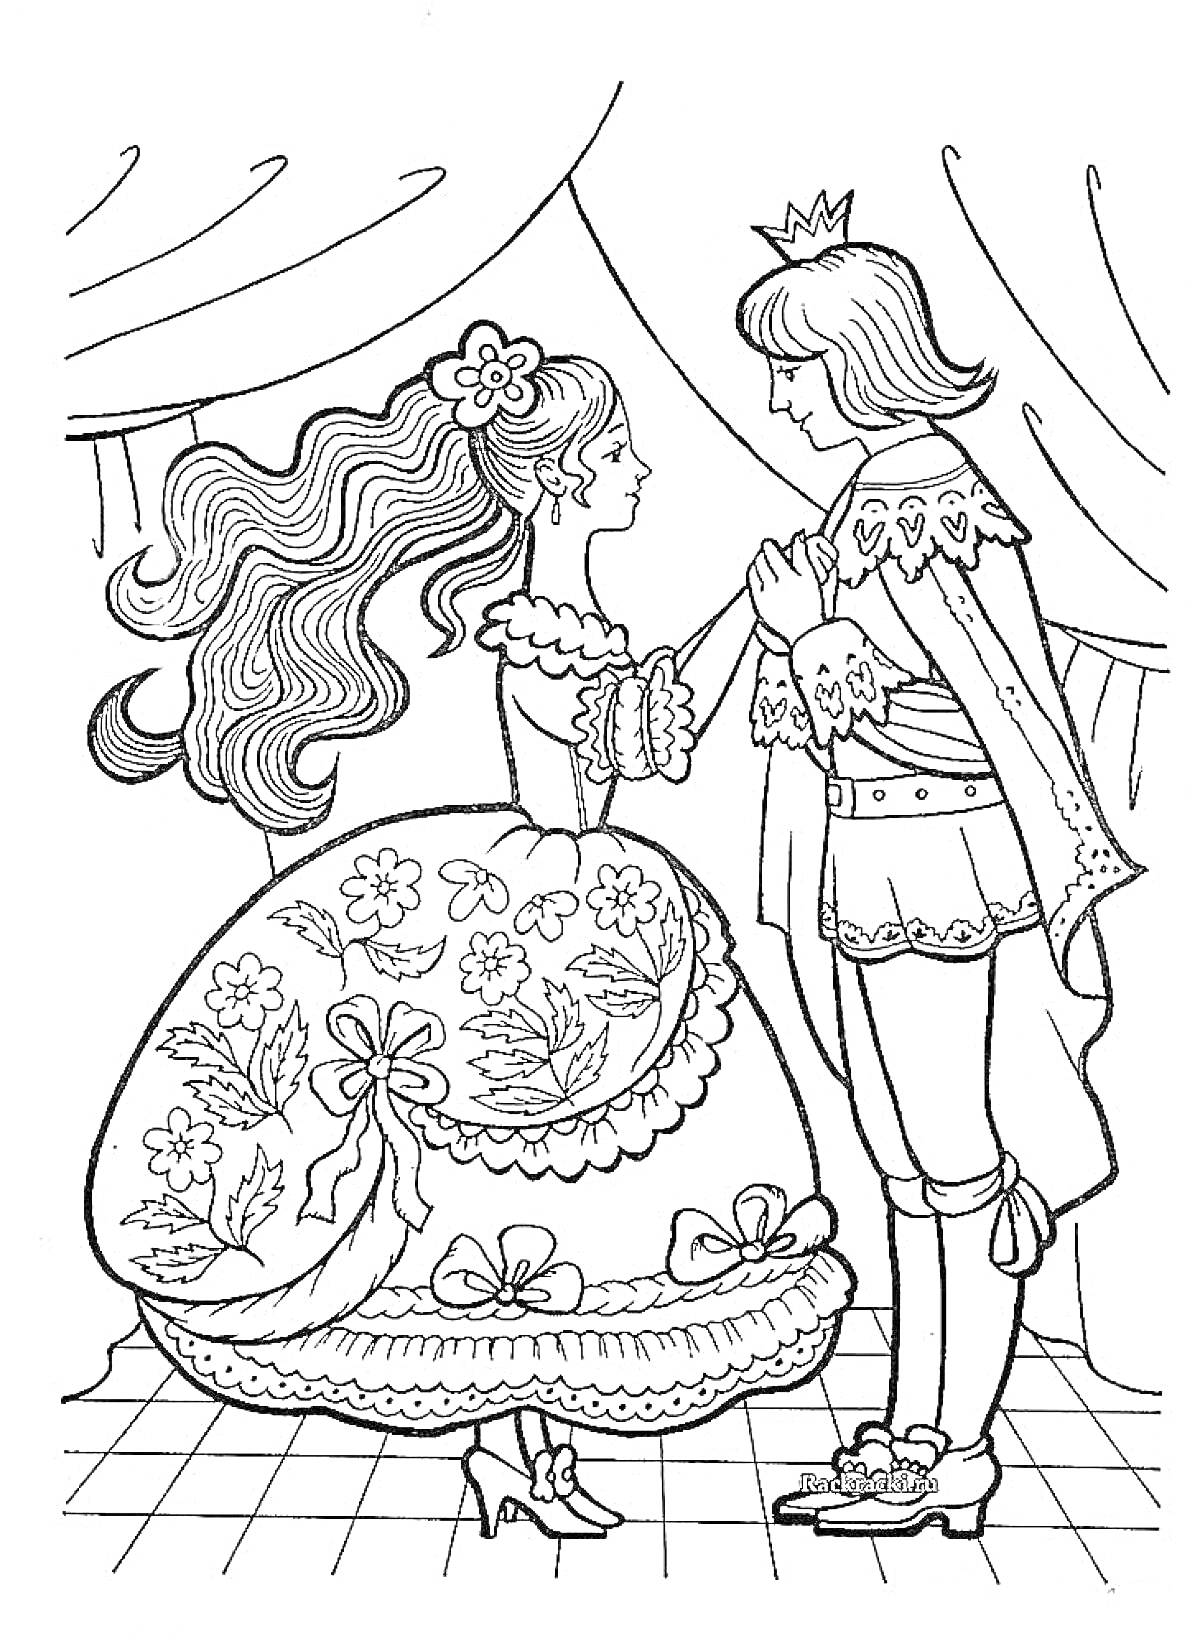 Раскраска Принц и Принцесса на балу с цветочным декором и занавесками